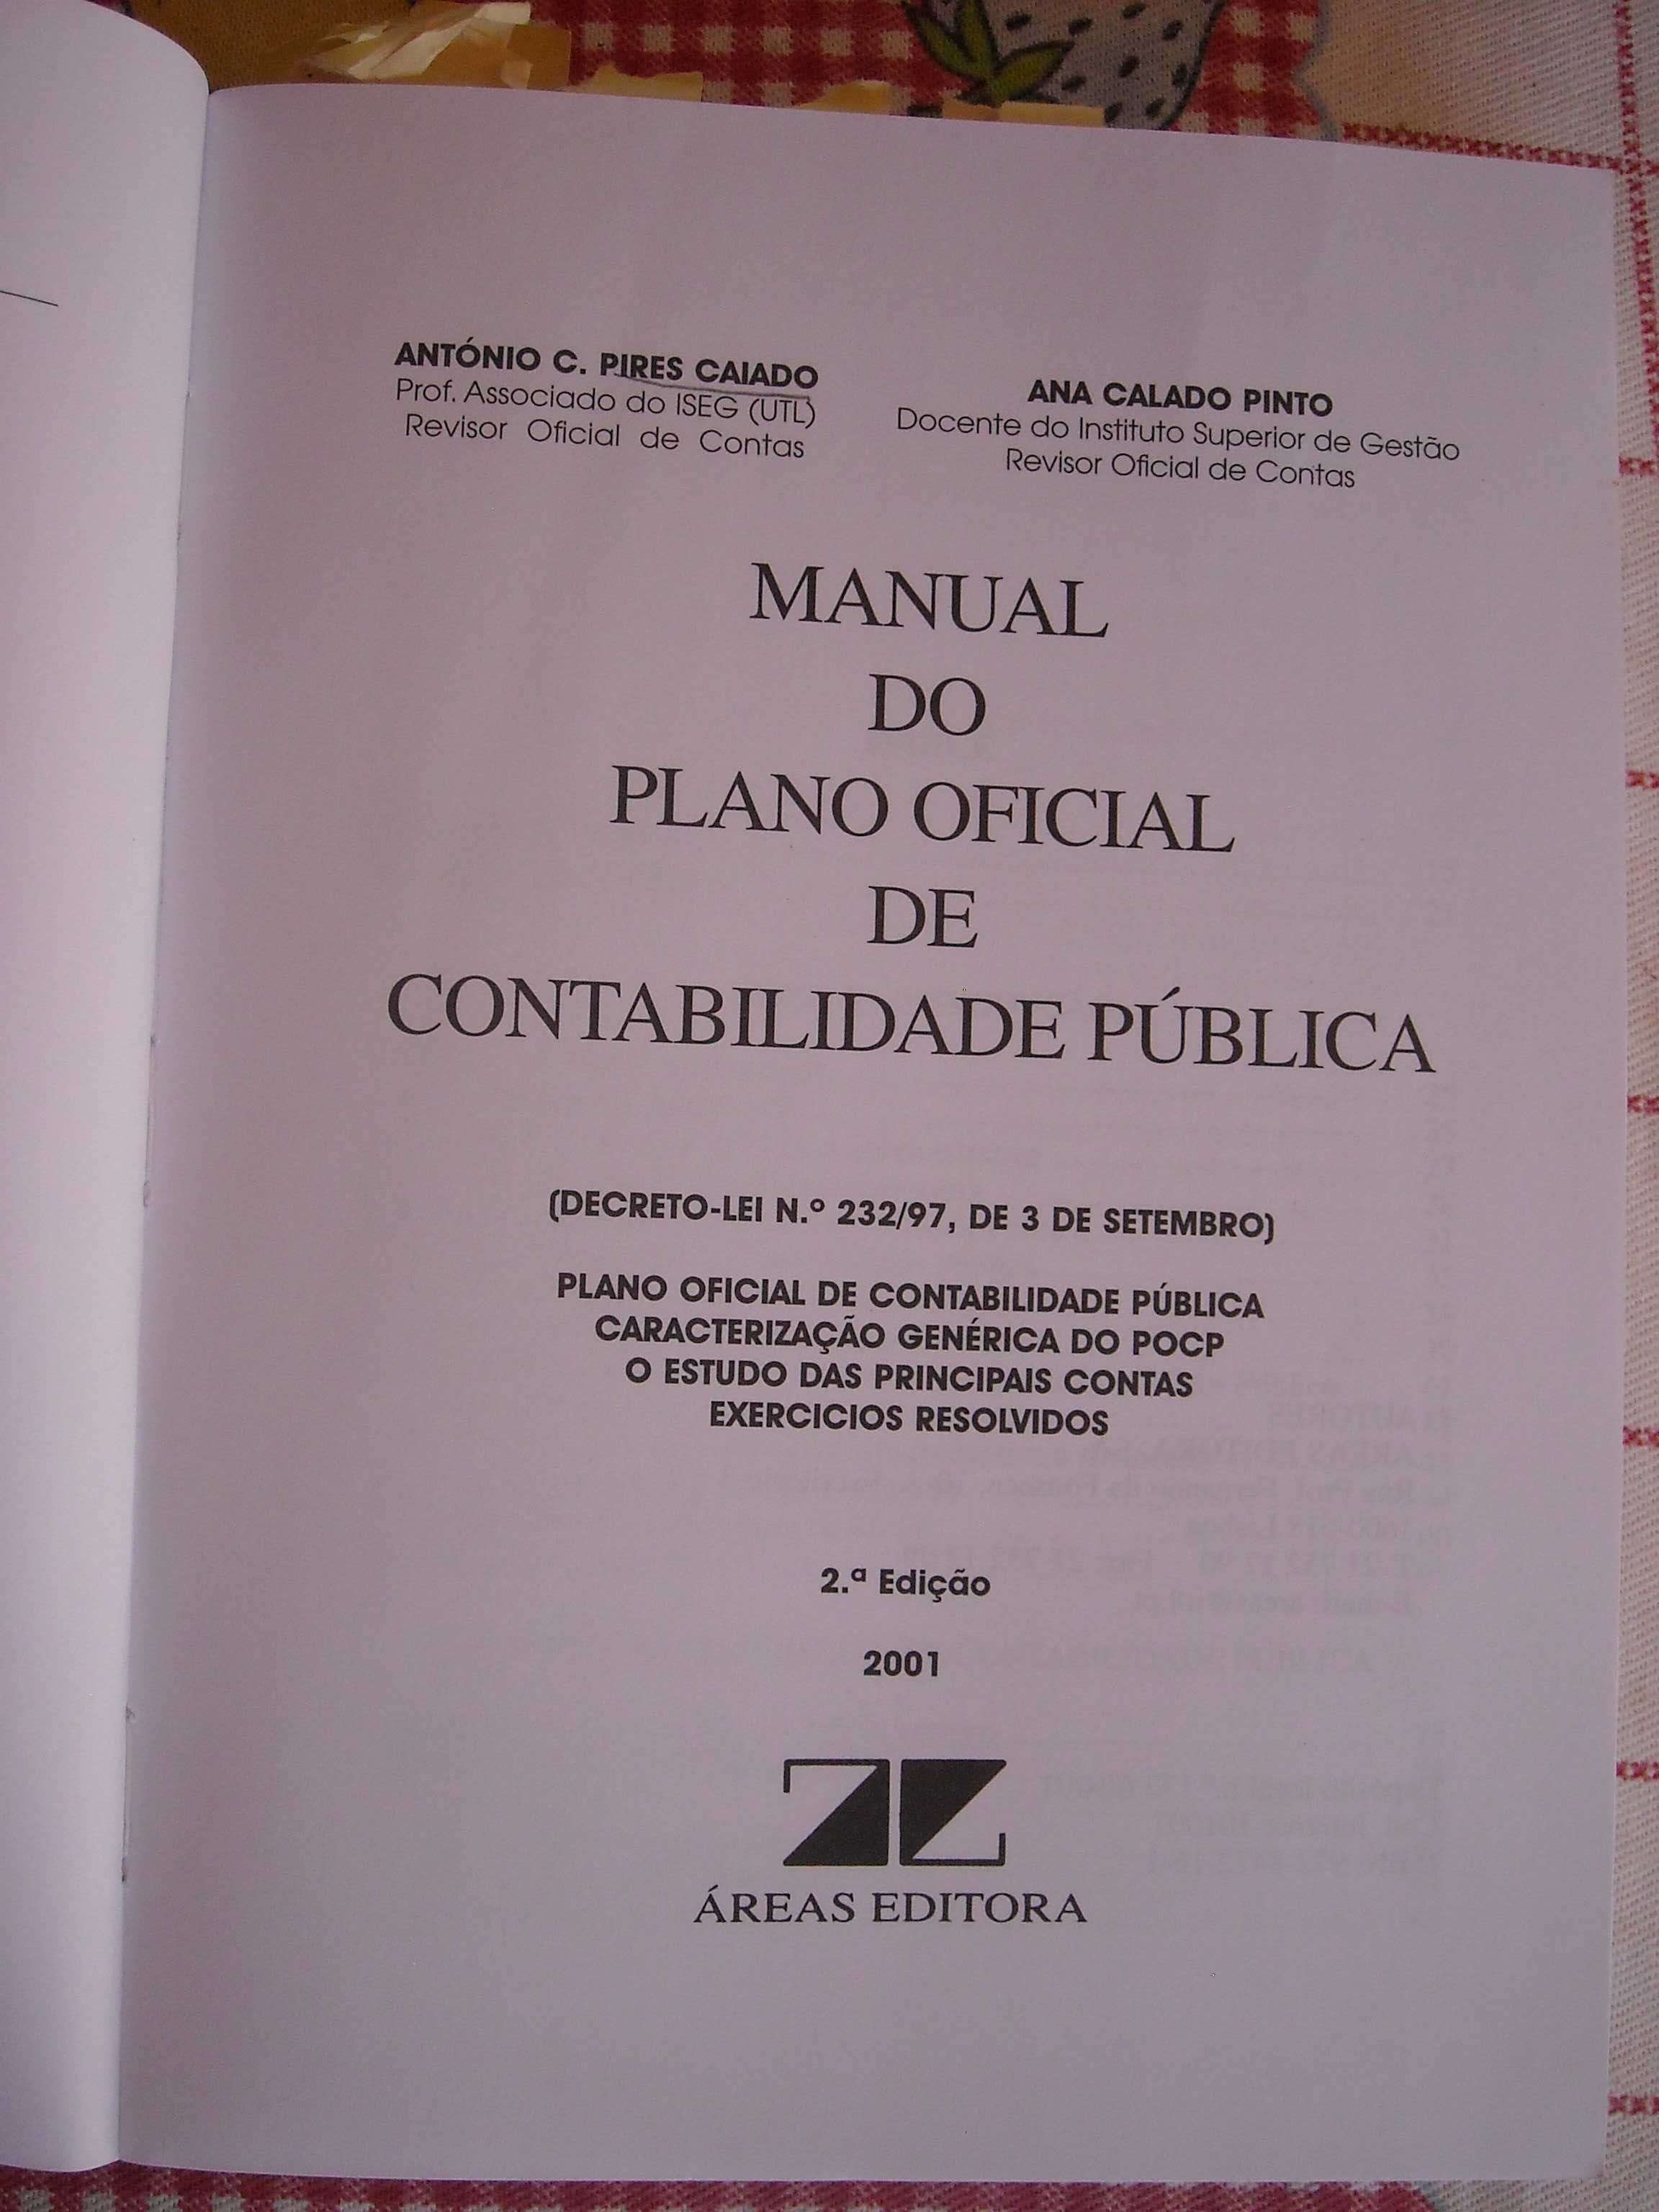 Manual do plano oficial de contabilidade publica - 2001/02